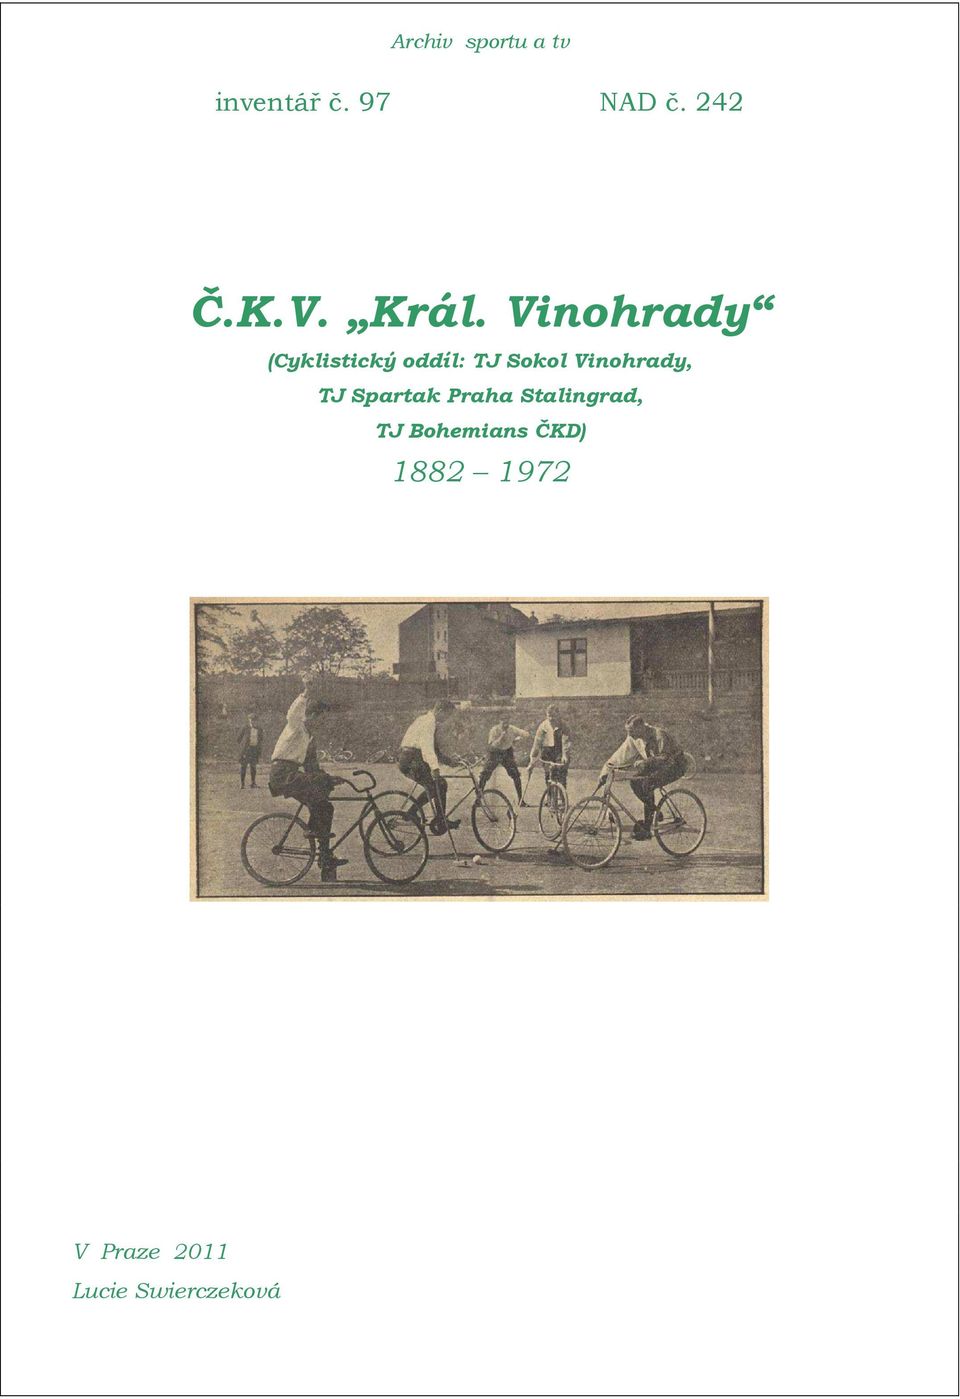 Vinohrady (Cyklistický oddíl: TJ Sokol